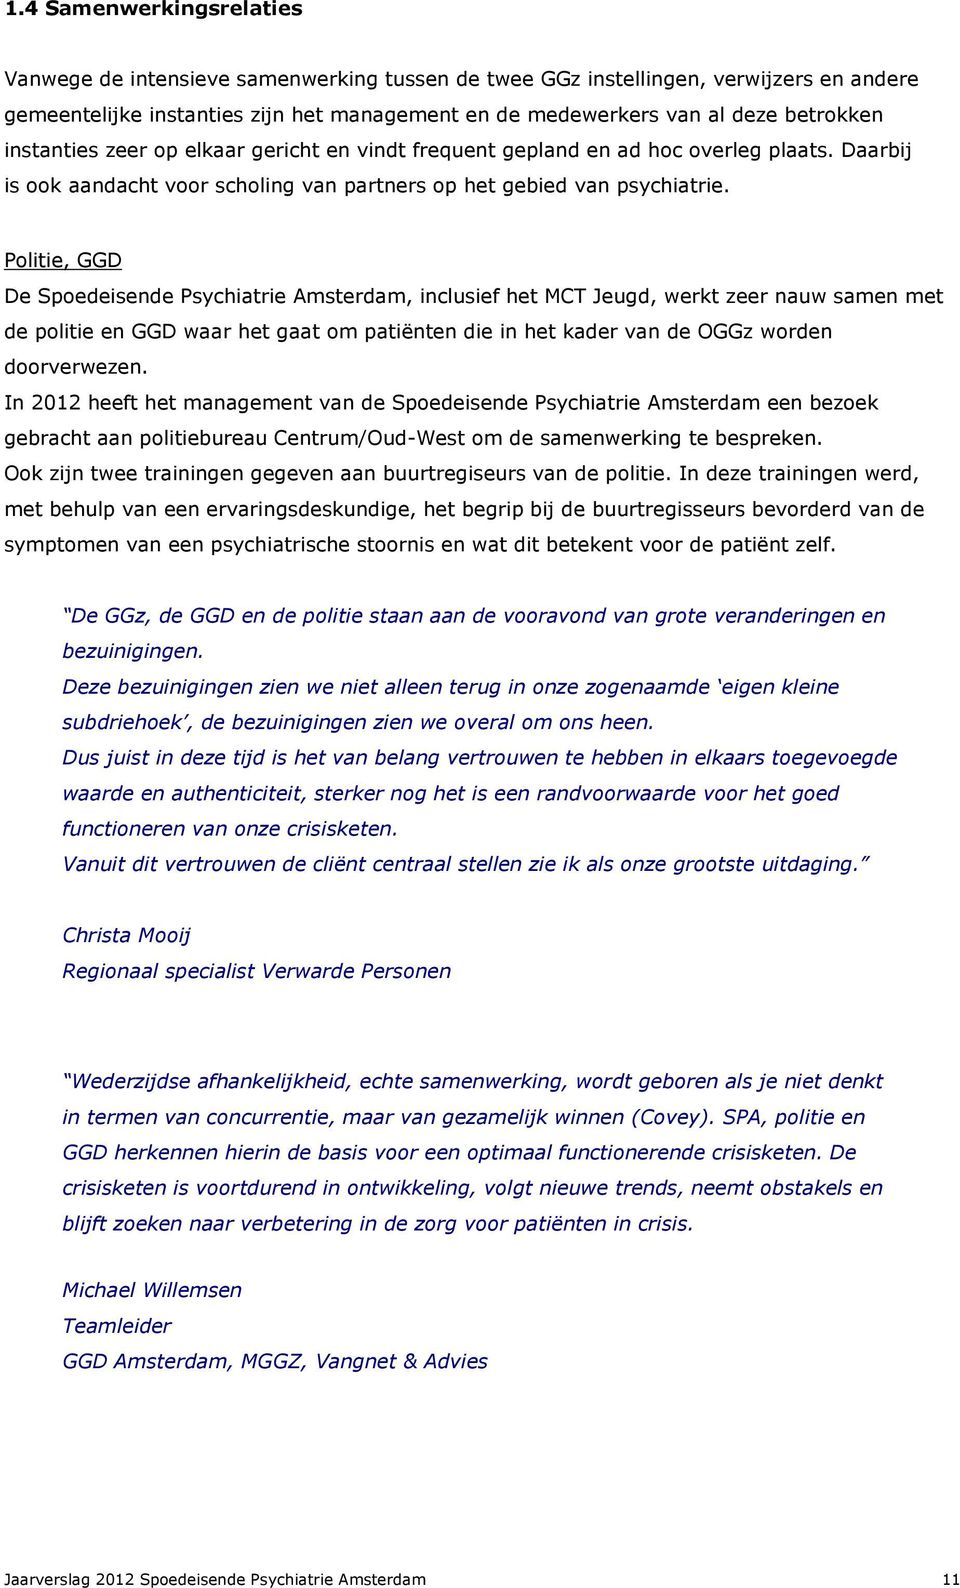 Politie, GGD De Spoedeisende Psychiatrie Amsterdam, inclusief het MCT Jeugd, werkt zeer nauw samen met de politie en GGD waar het gaat om patiënten die in het kader van de OGGz worden doorverwezen.